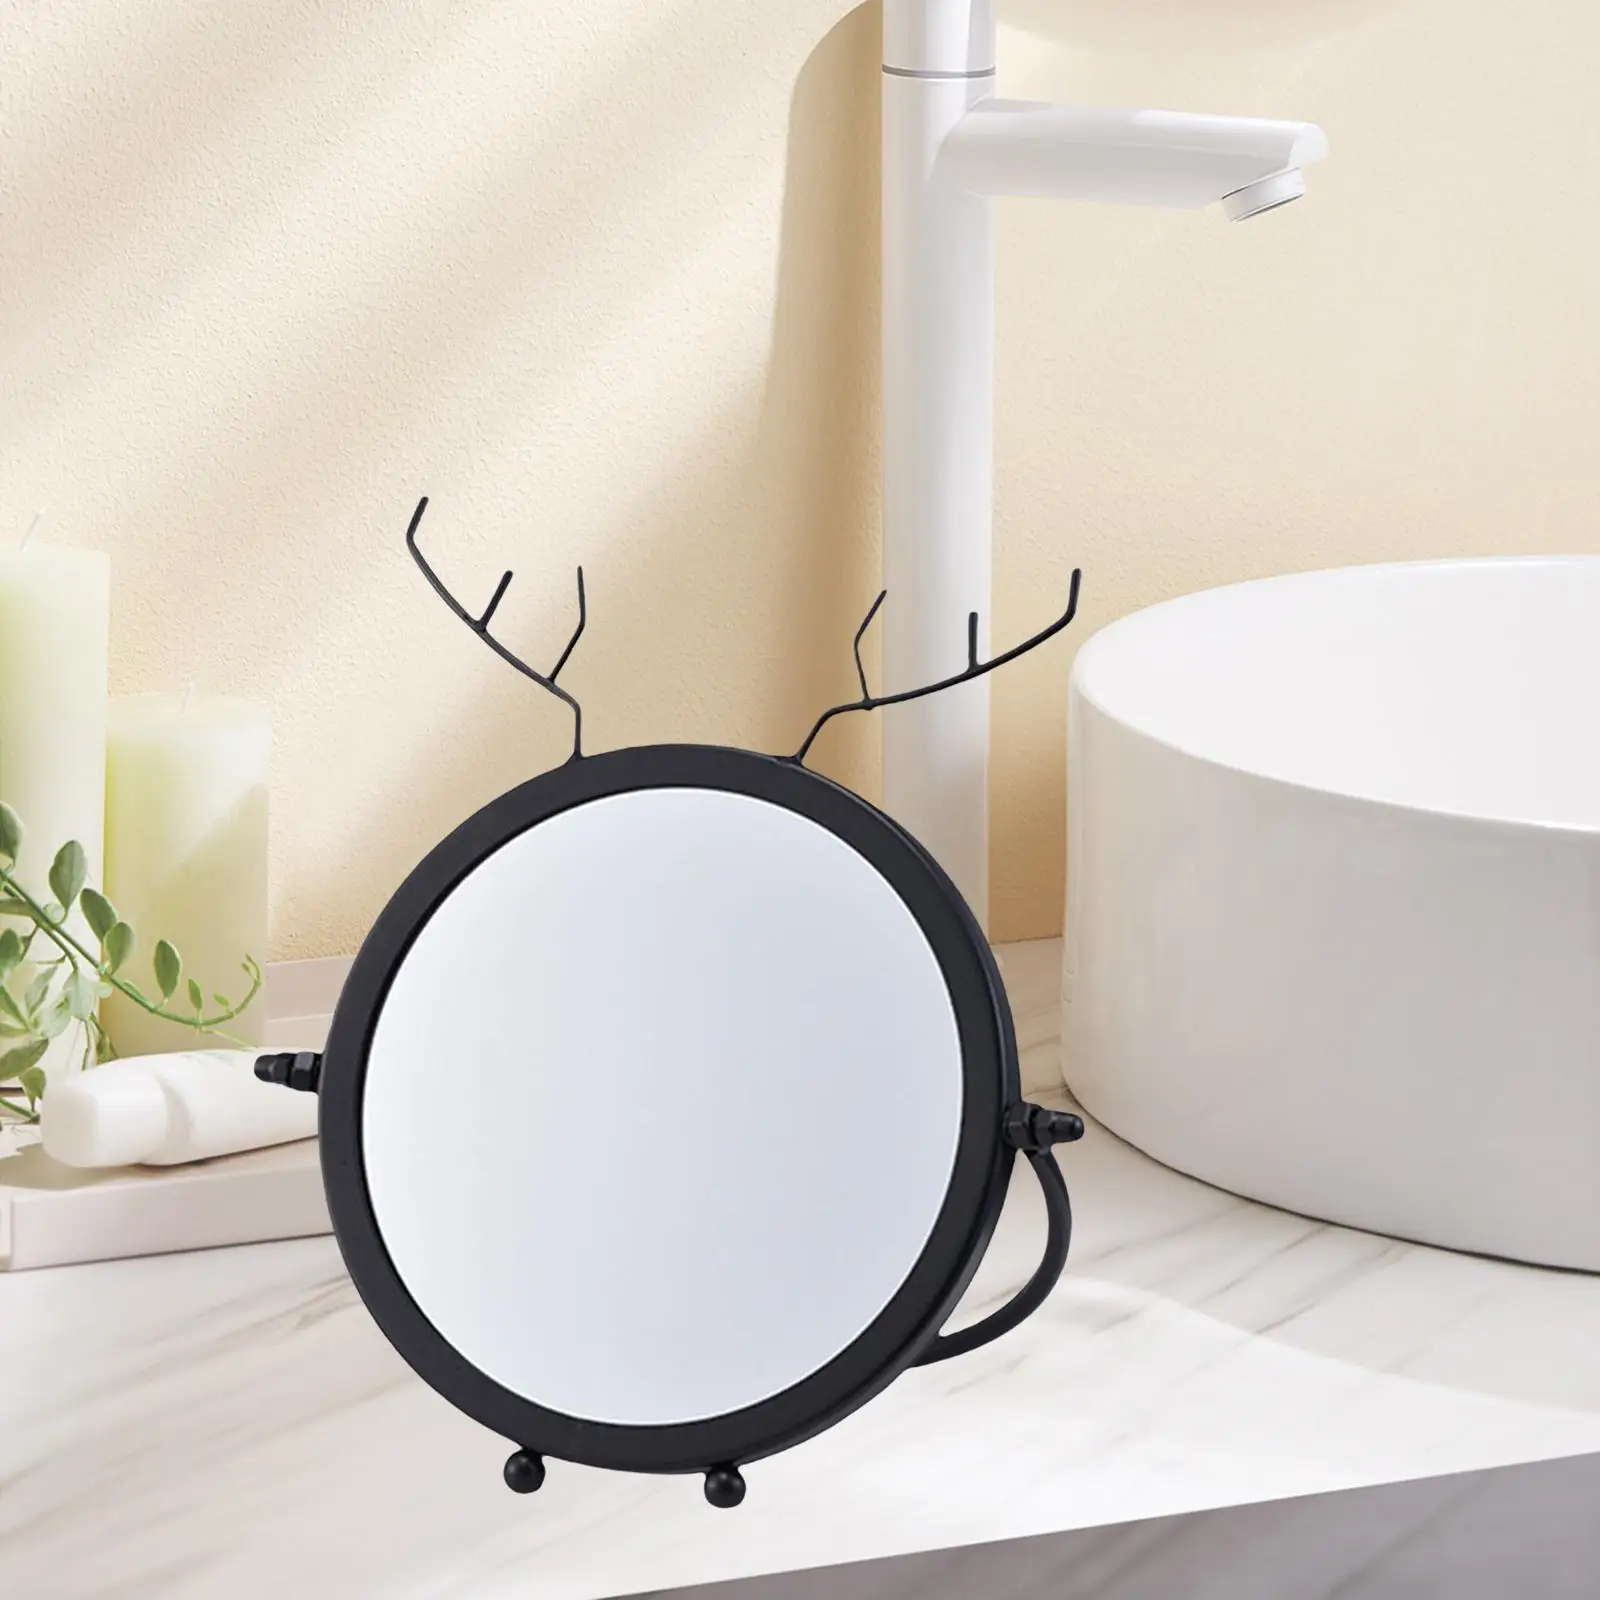 Desktop Makeup Mirror Table Mirror Decoration for Bedroom Bathroom